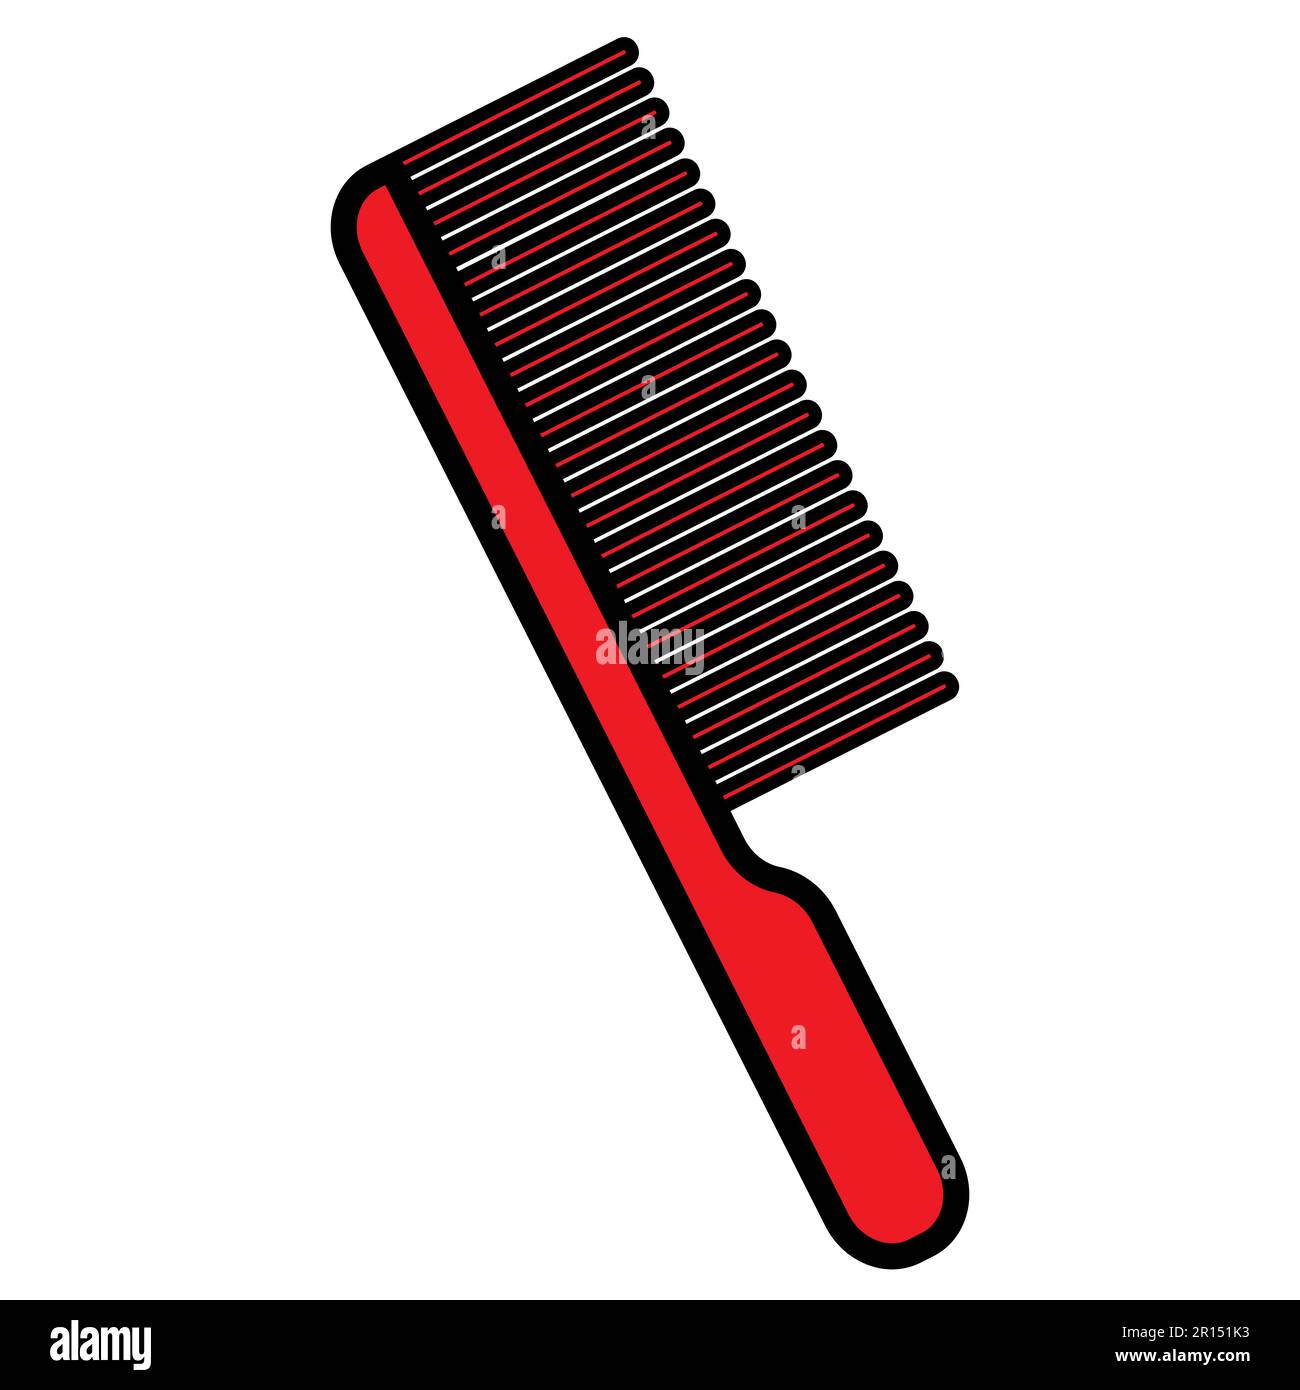 Icona del pettine dei capelli Immagini senza sfondo e Foto Stock ritagliate  - Pagina 2 - Alamy